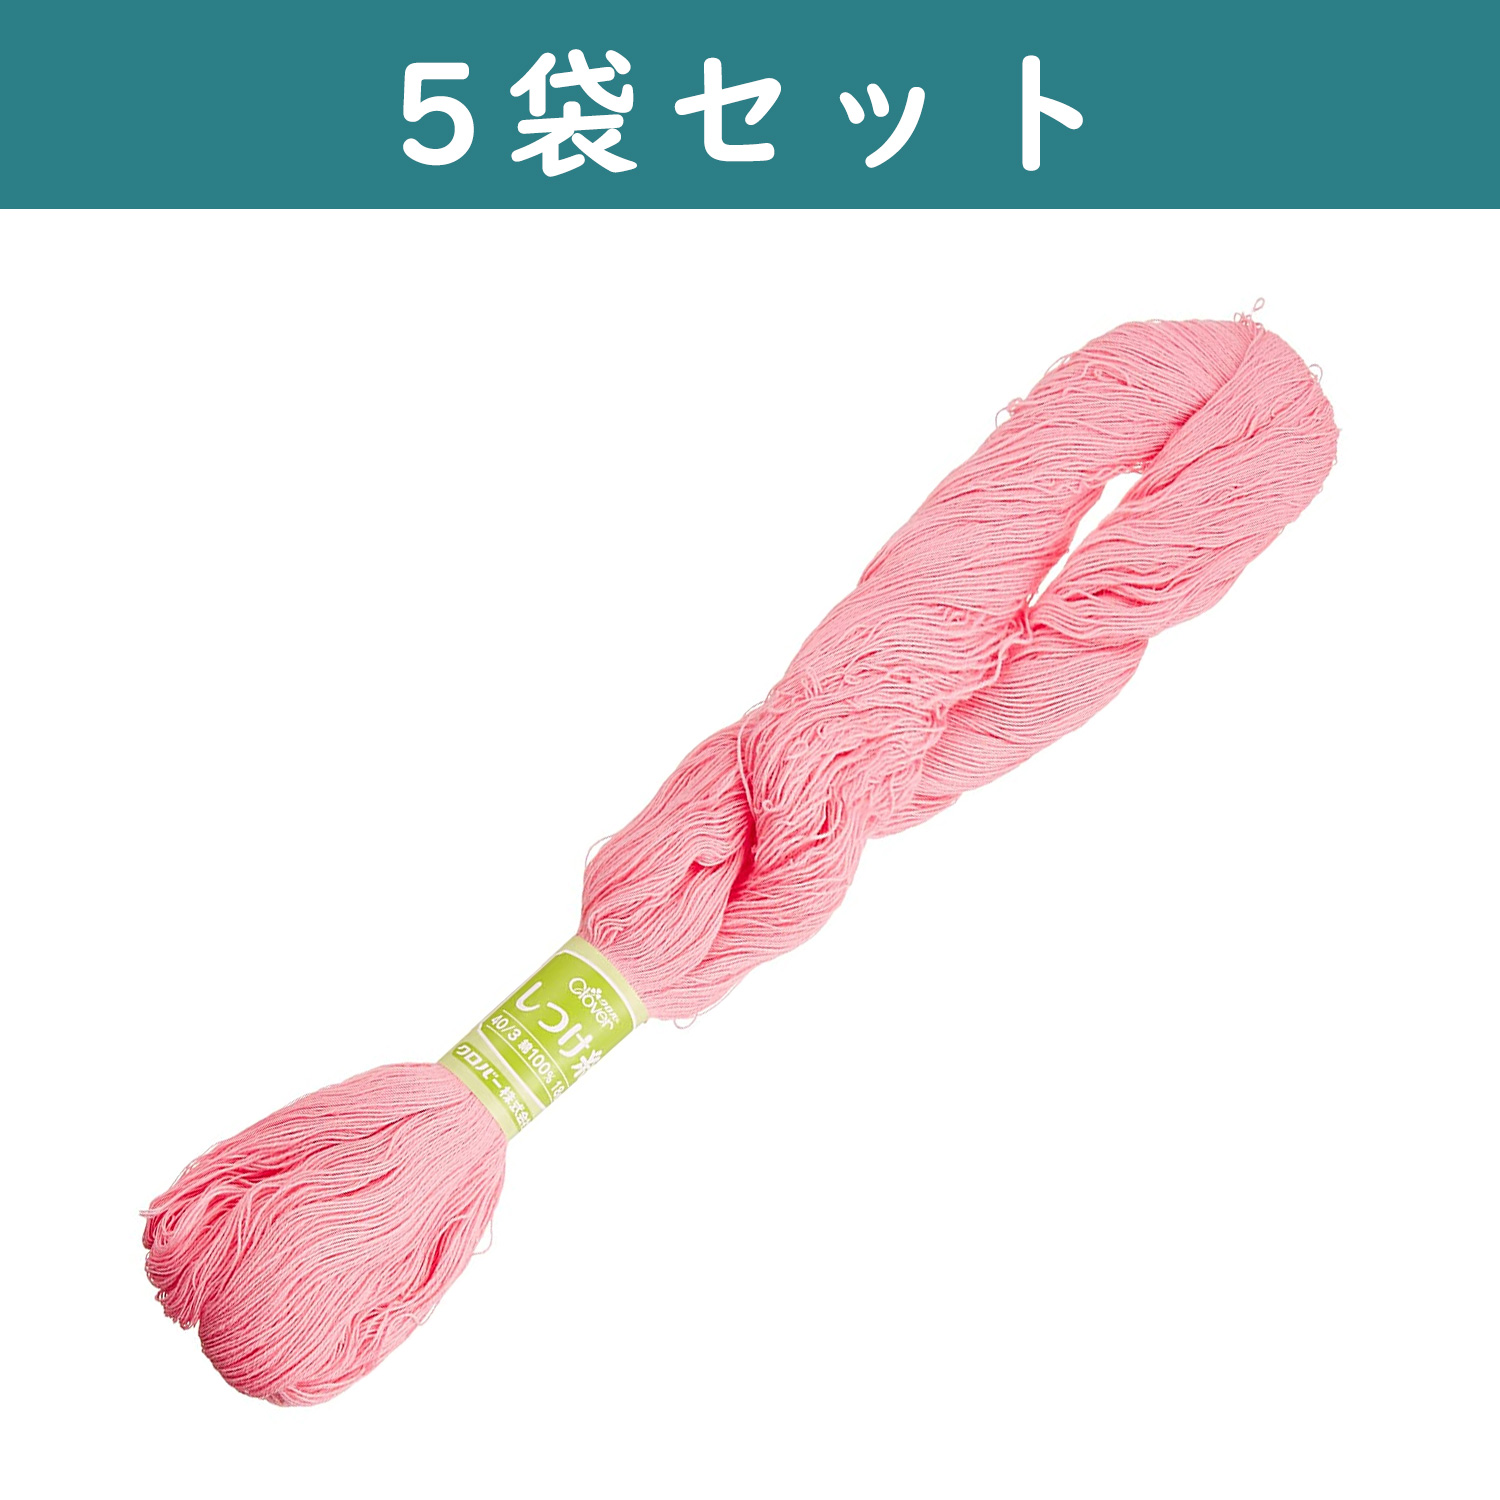 ■【5個】CL26-577-5set しつけ糸 18g 1かせ入り ピンク ×5個 (セット)